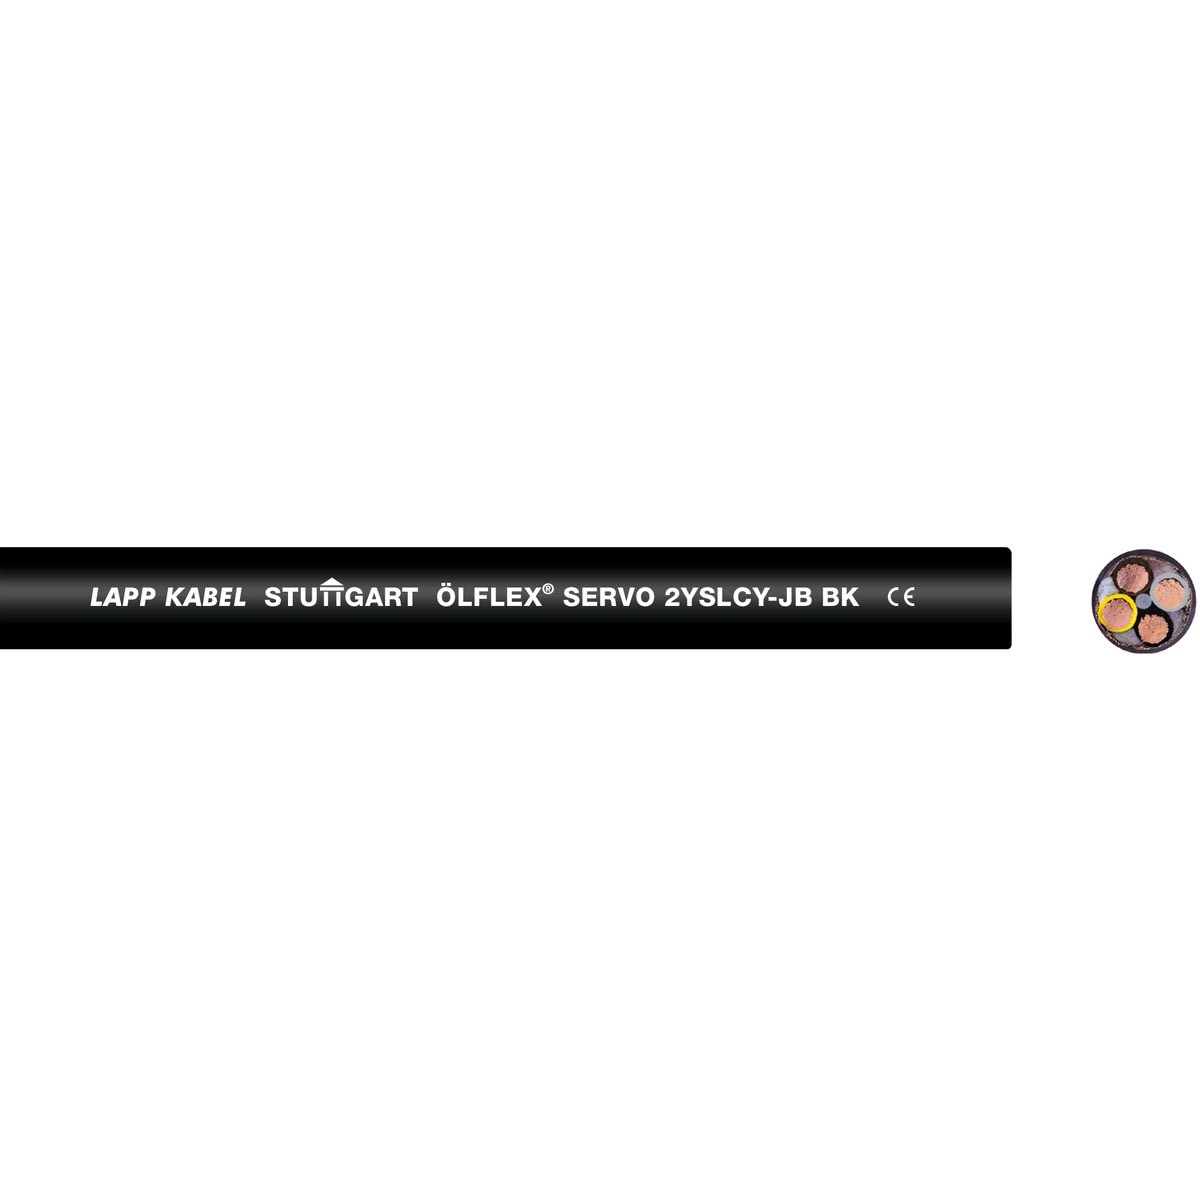 Lapp - ÖLFLEX SERVO 2YSLCY-JB BK 4G185